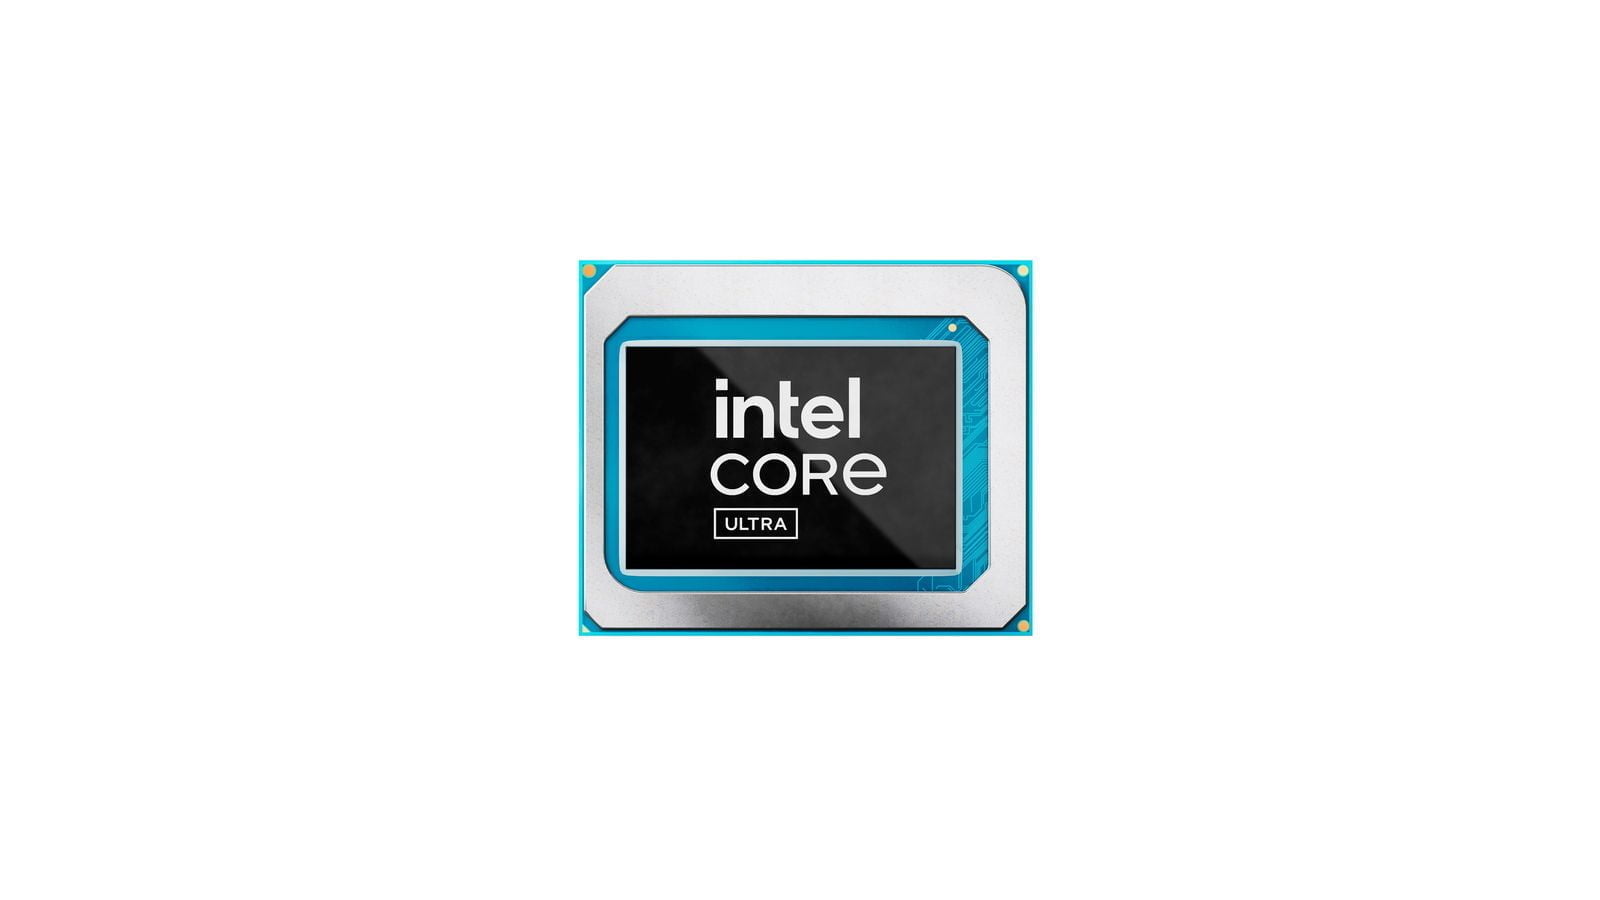 Intel Core Ultra 4 result MMOSITE - Thông tin công nghệ, review, thủ thuật PC, gaming